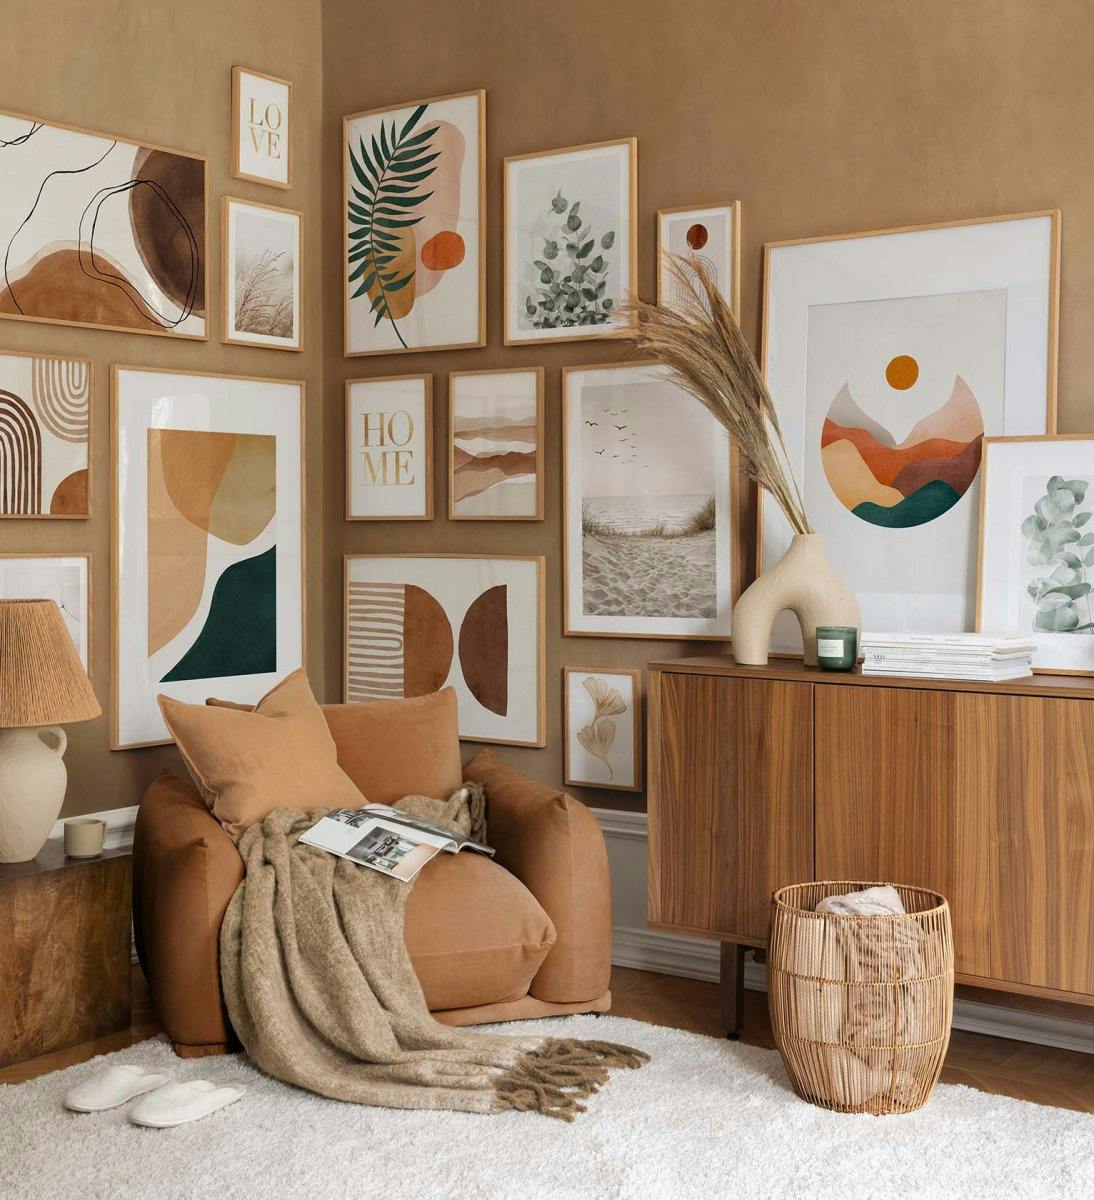 Mur de galerie moderne avec des impressions d'art graphique dans des couleurs naturelles avec des cadres en chêne pour le salon 